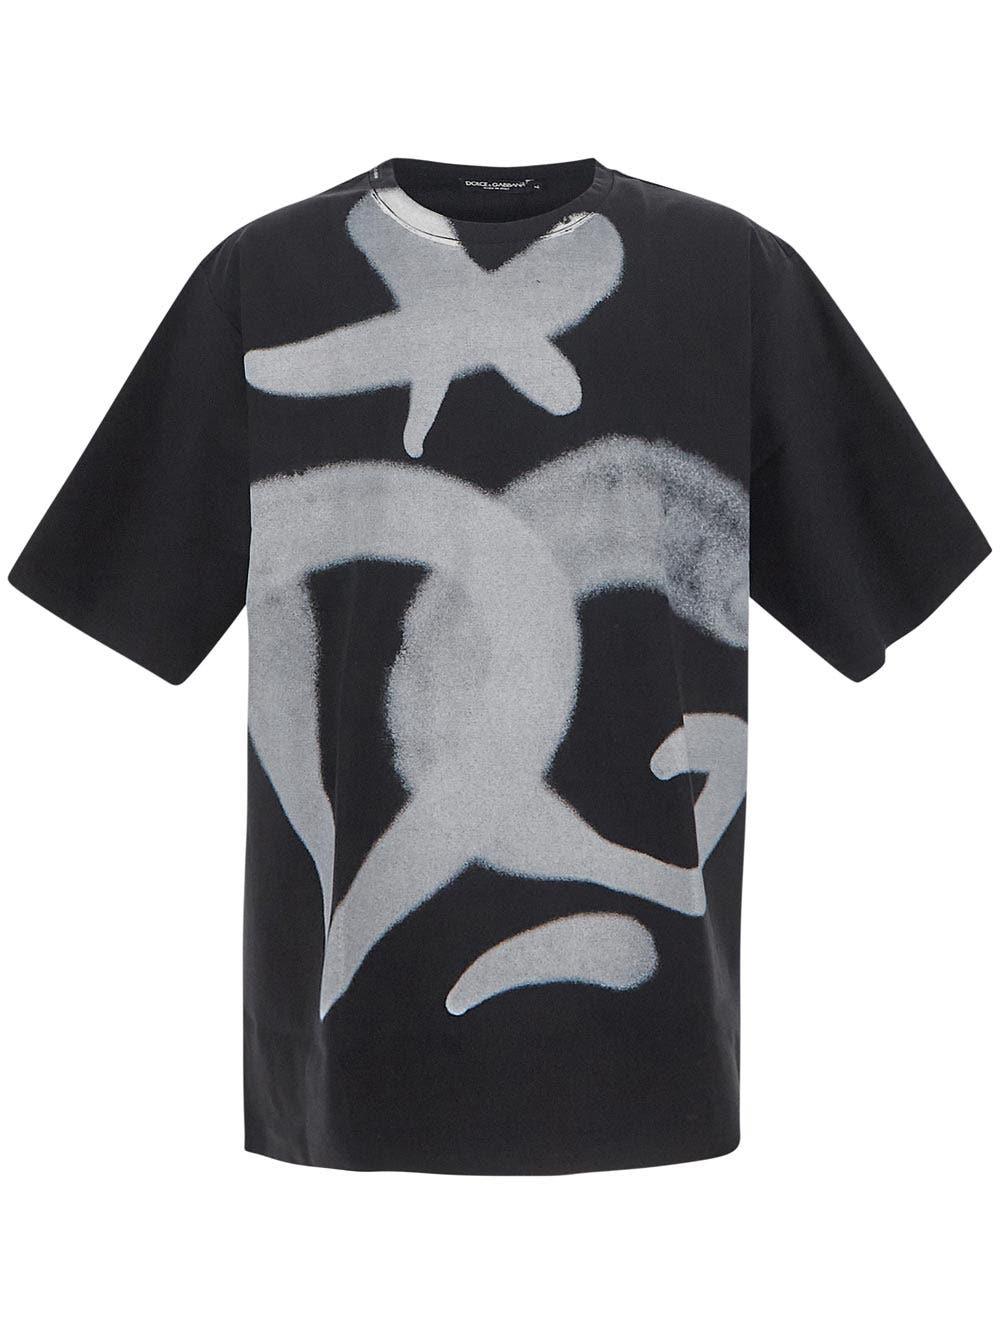 Dolce & Gabbana Graffiti Black T-shirt